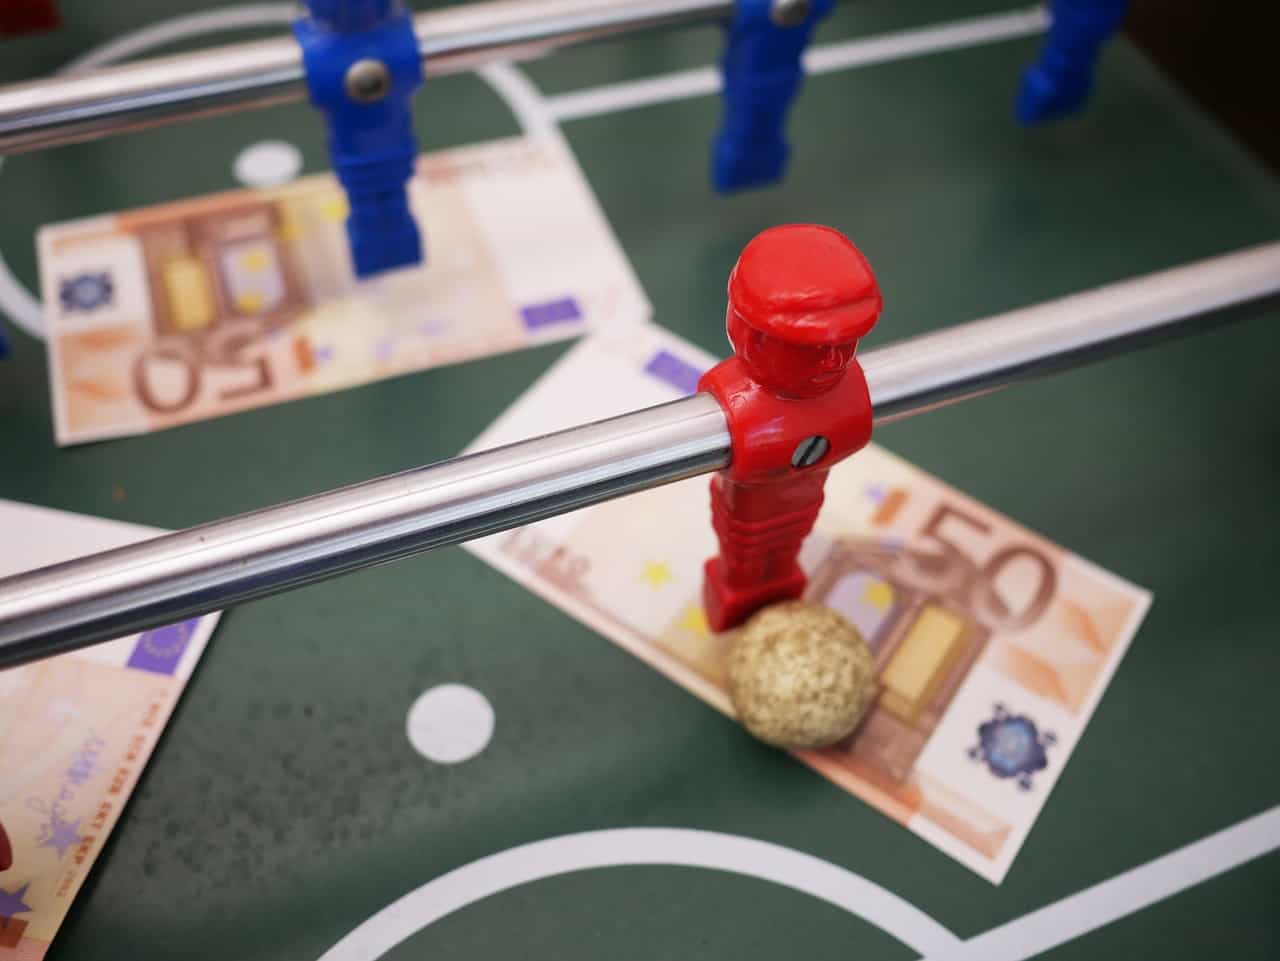 Mesa de futbolín con dos billetes de cincuenta euros bajos los jugadores.